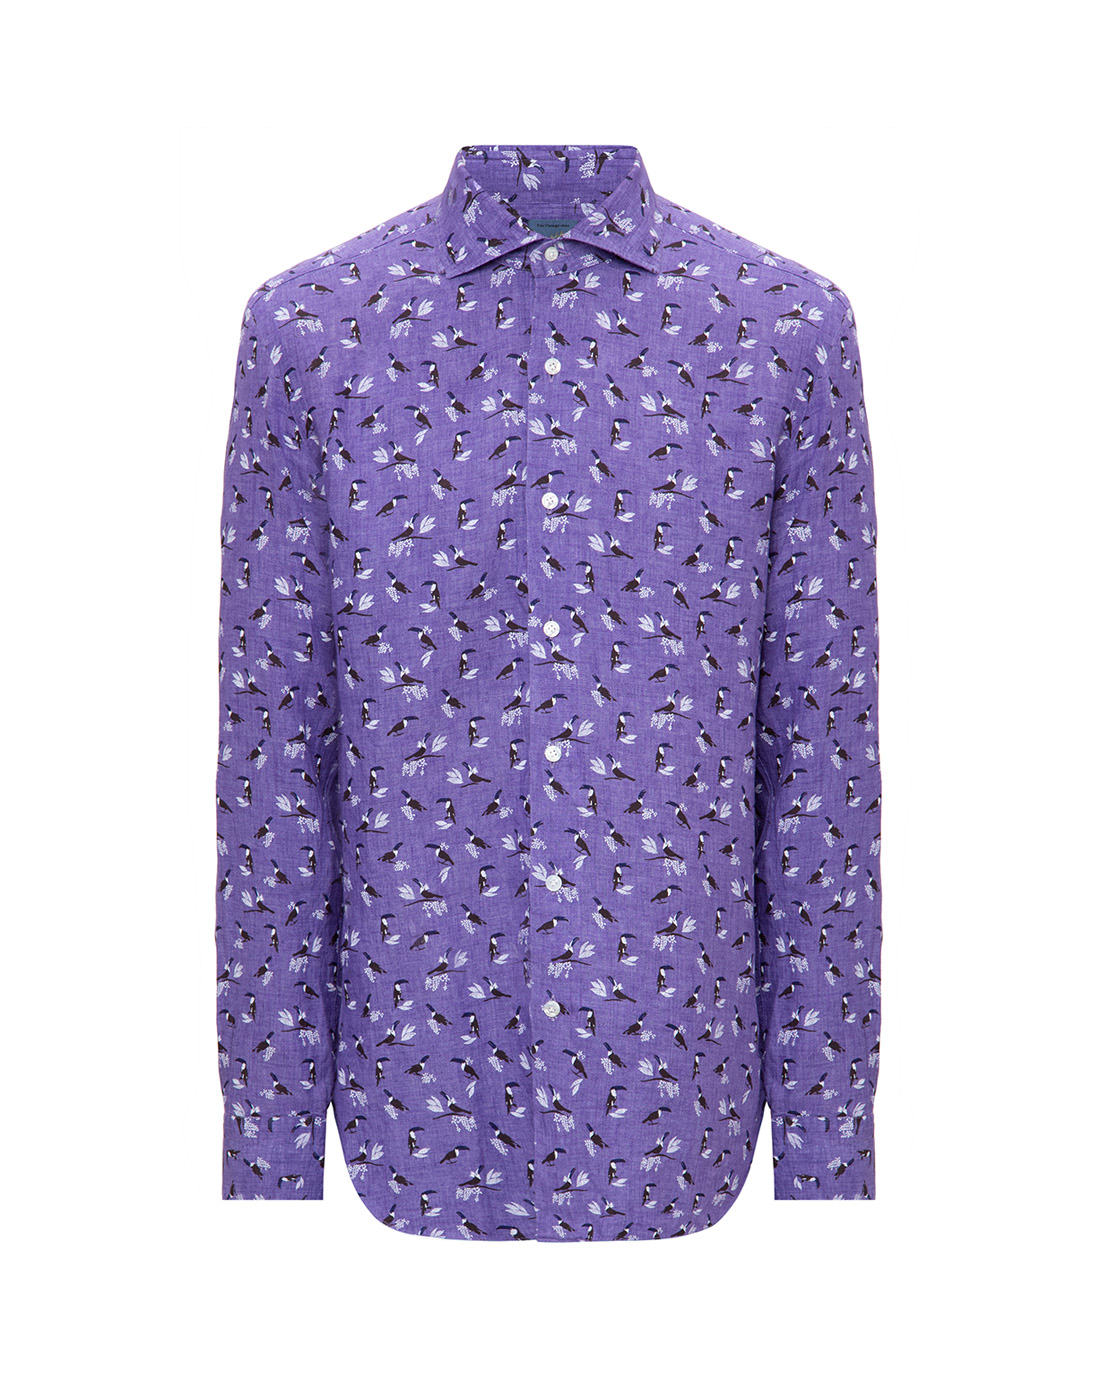 Мужская фиолетовая льняная рубашка с принтом Barba SD2U136642608V-1